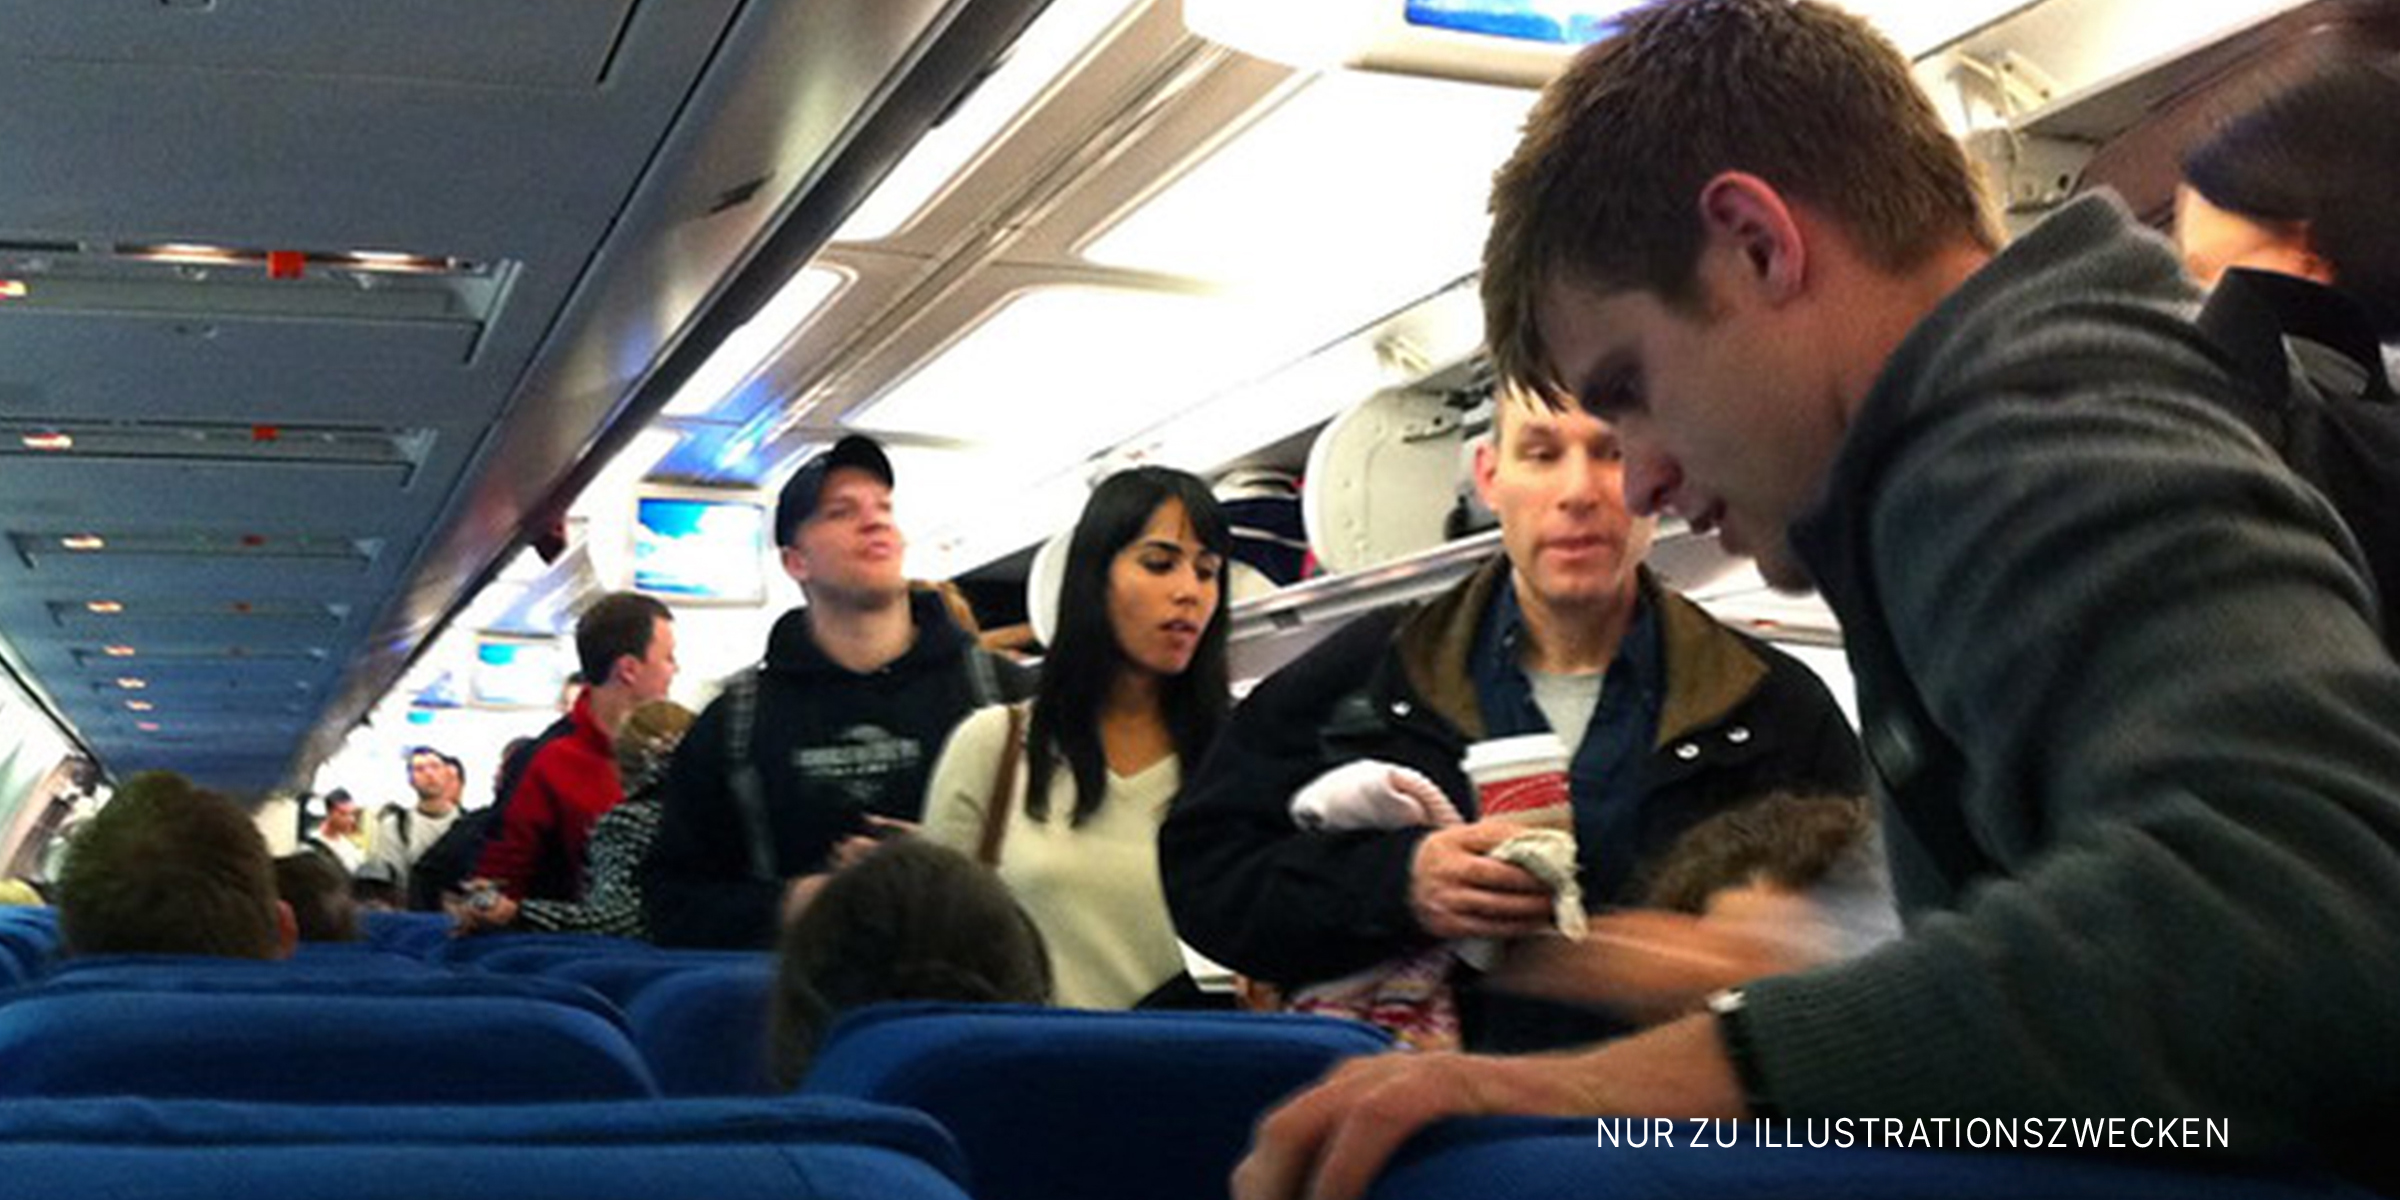 Passagiere in einem Flugzeug | Quelle: flickr.com/MattHurst/CC BY-SA 2.0